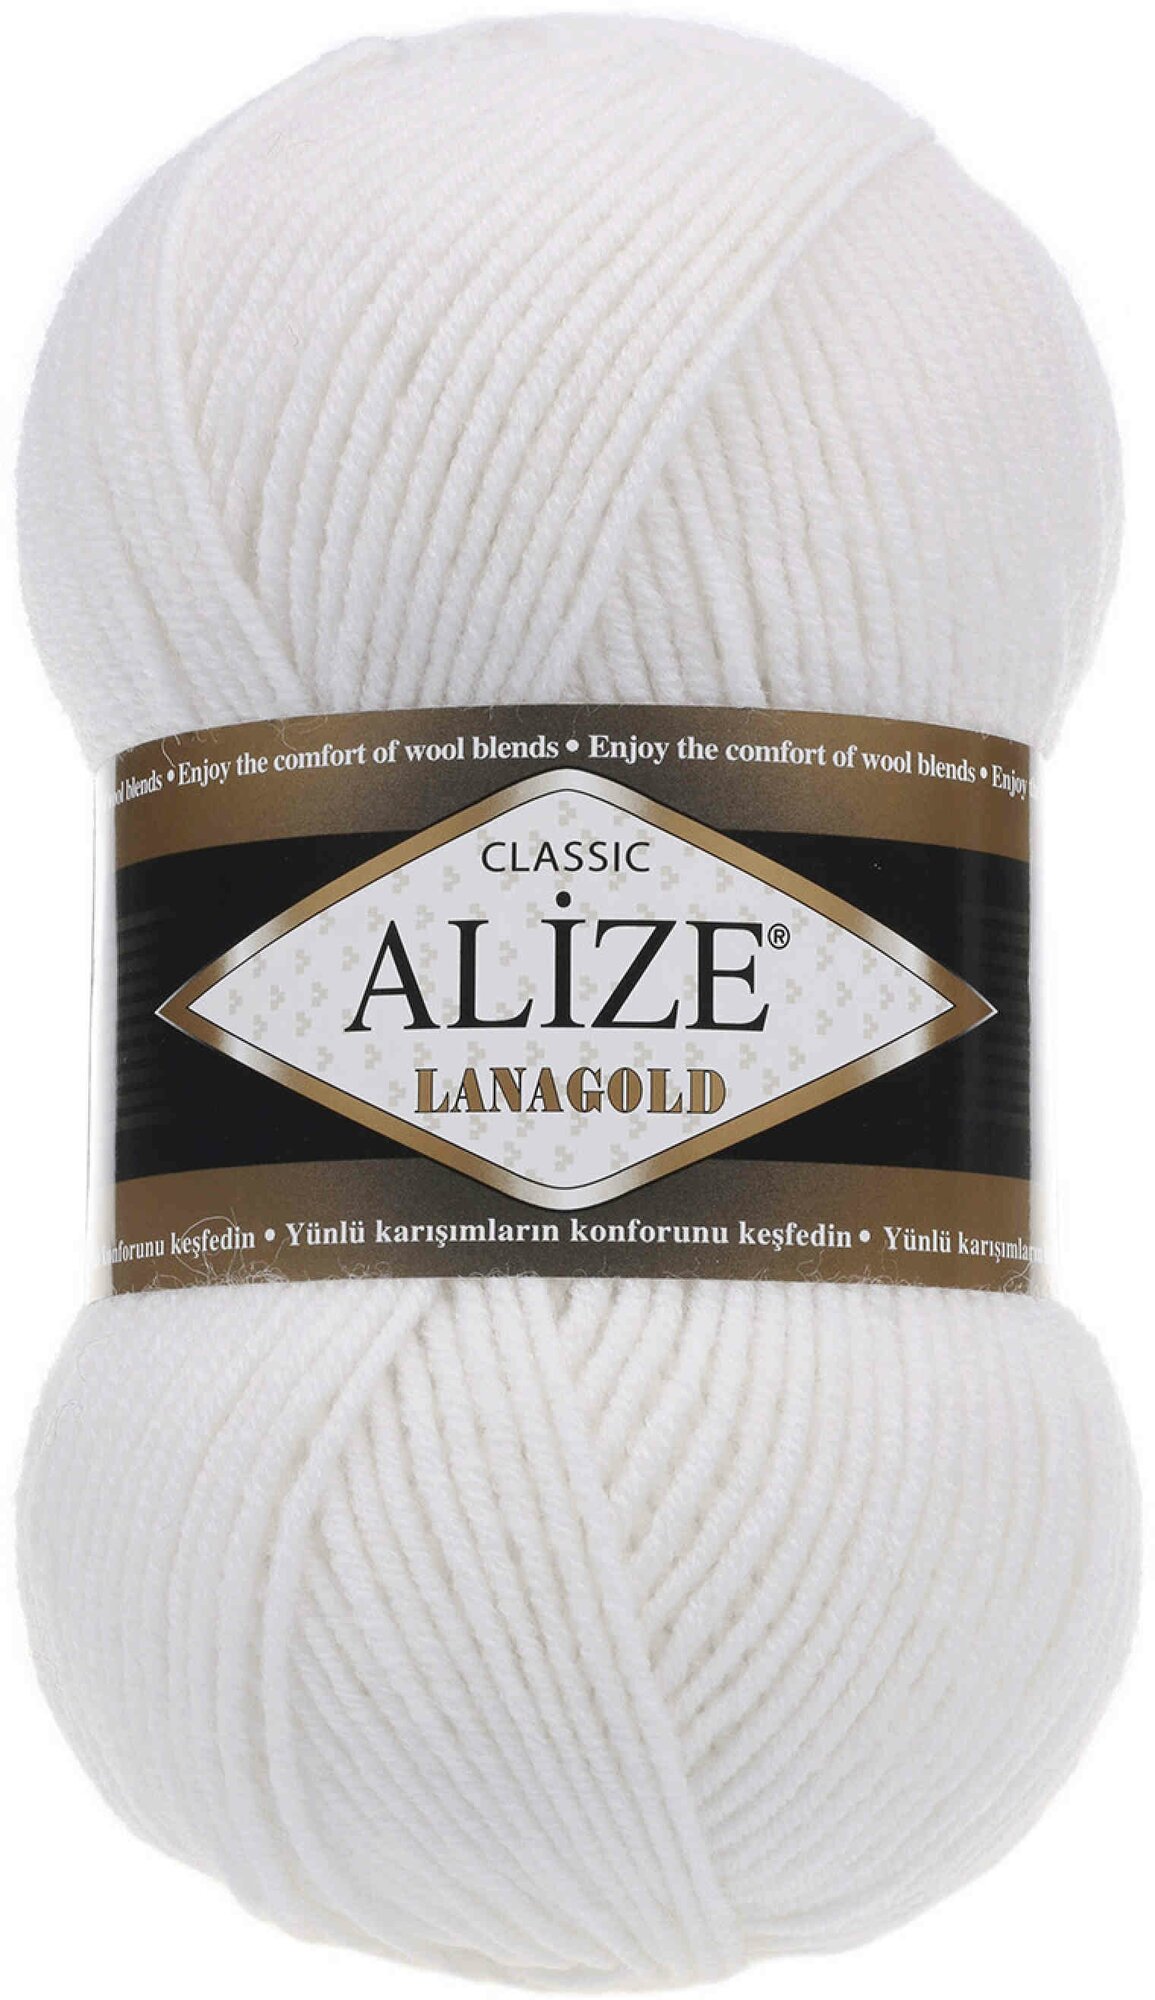 Пряжа Alize Lanagold белый (55), 51%акрил/49%шерсть, 240м, 100г, 2шт